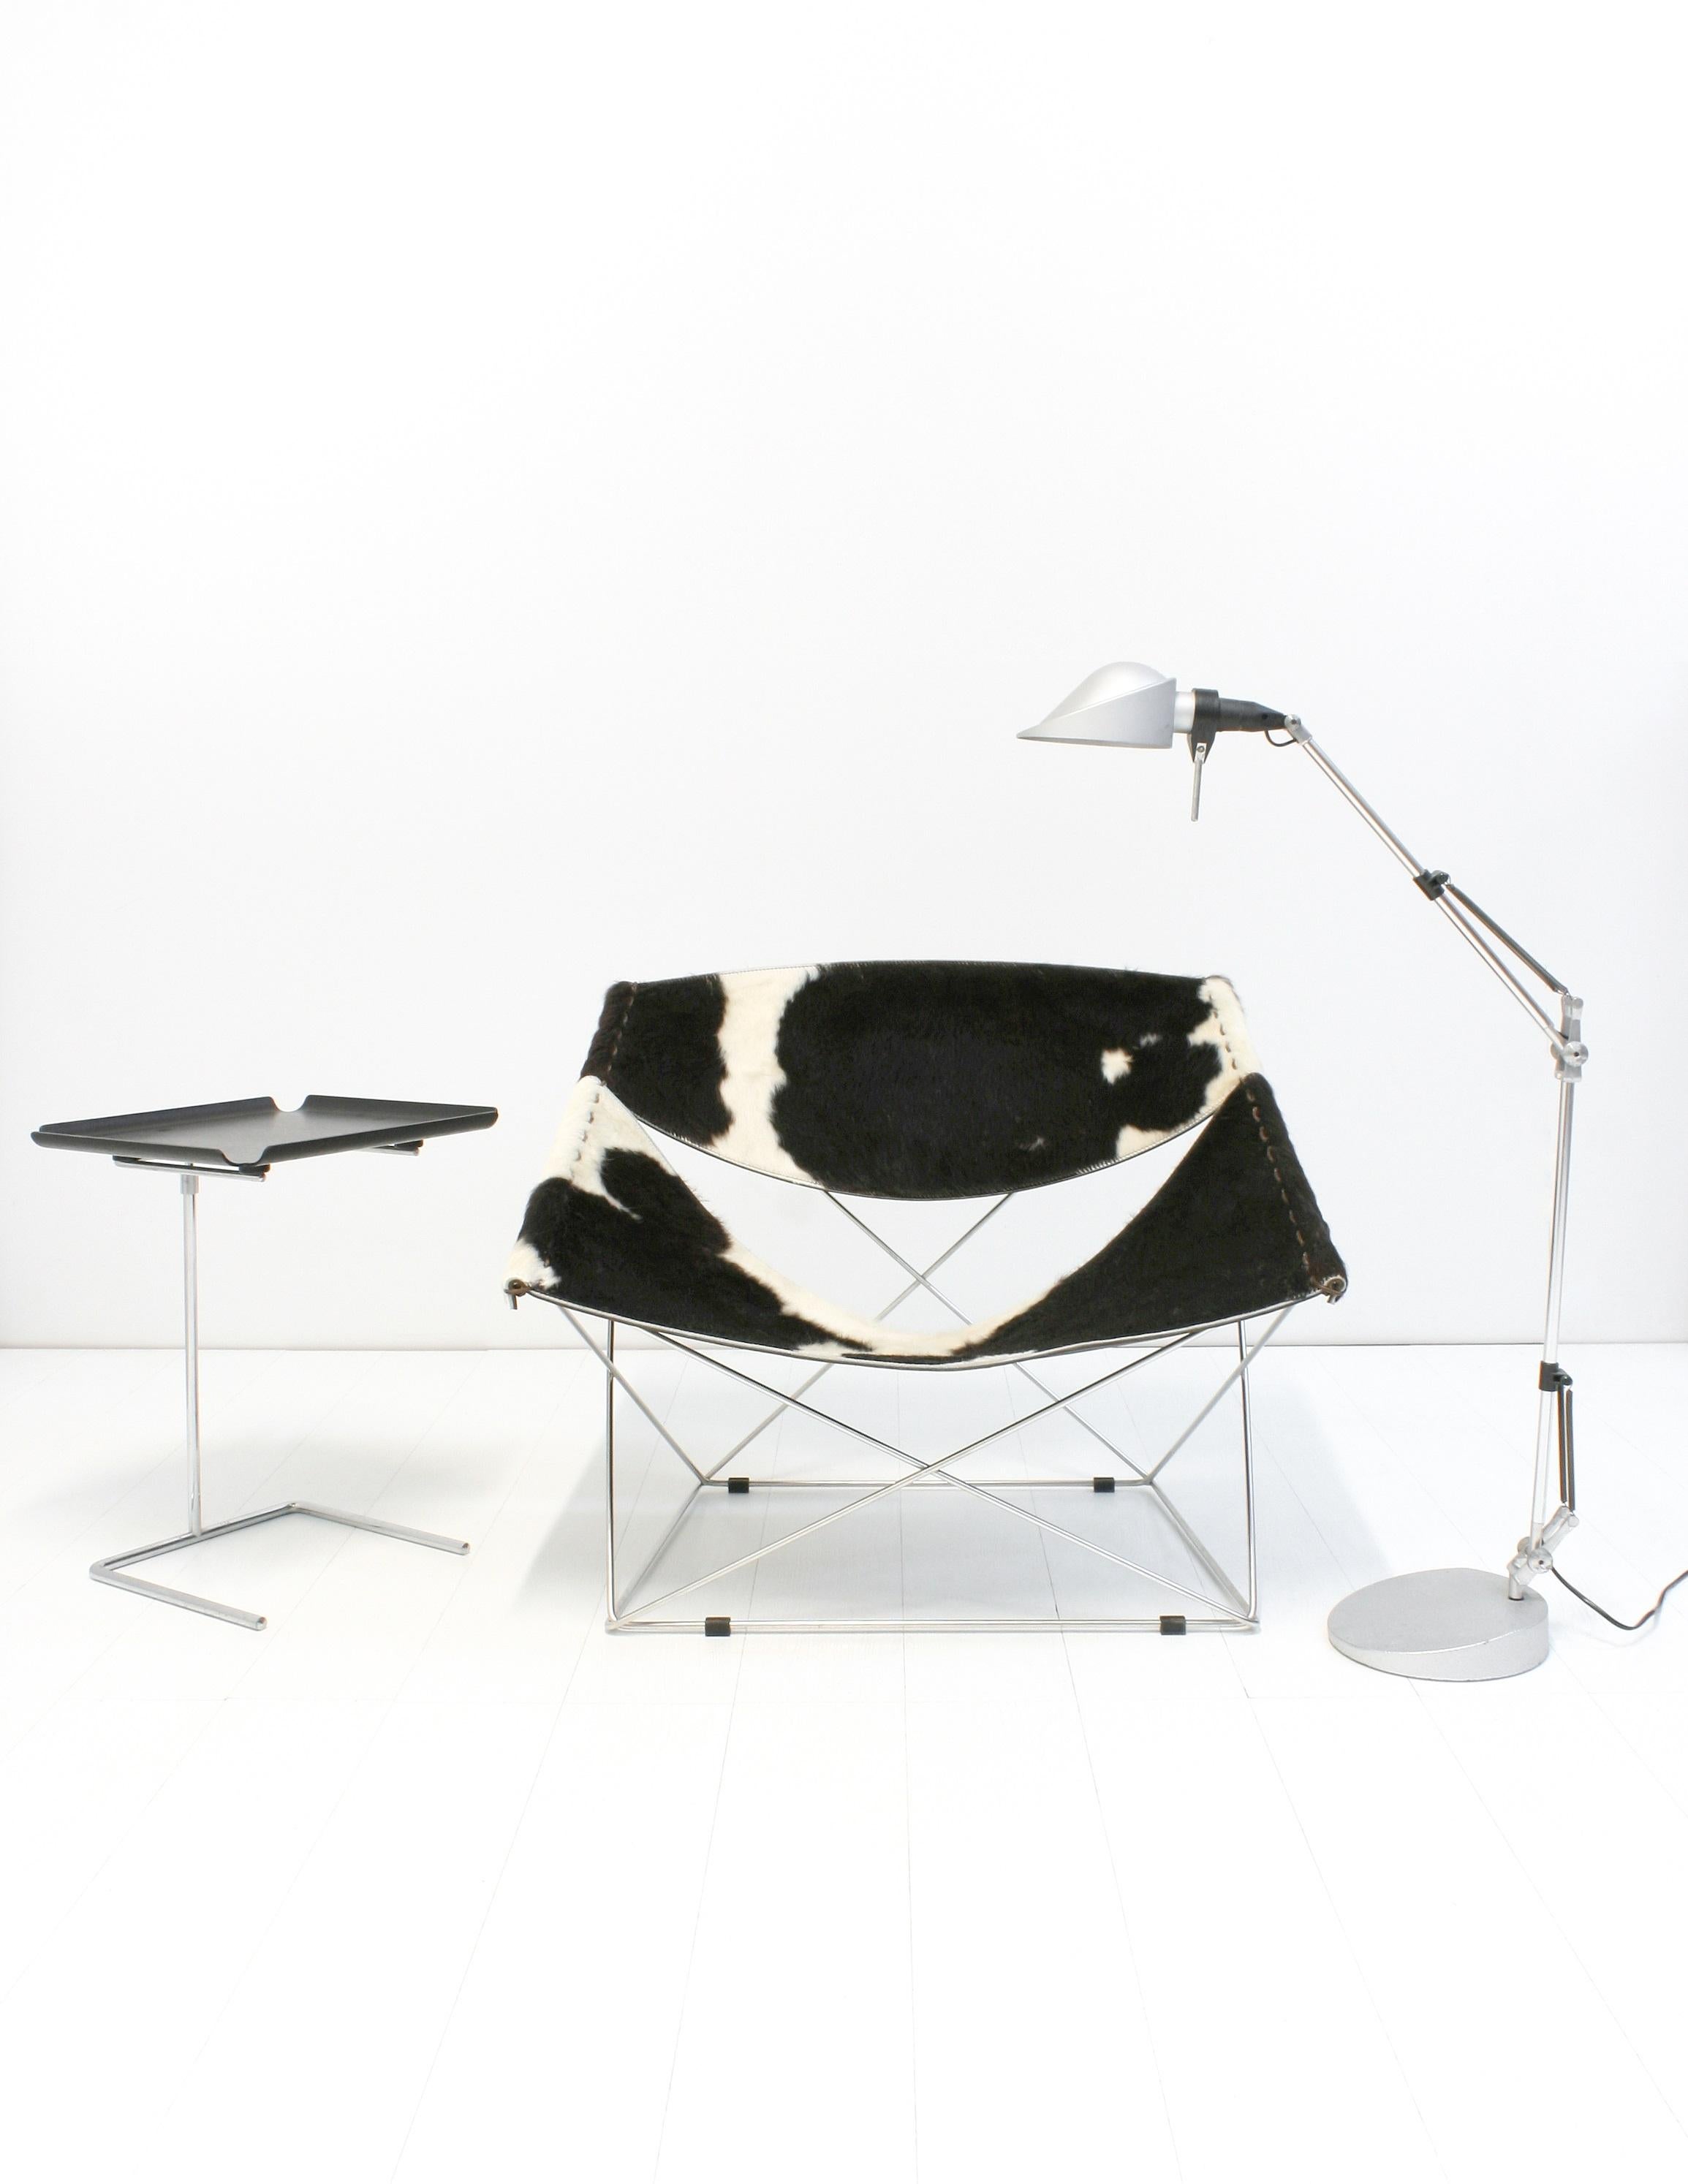 La F675, également connue sous le nom de Butterfly Chair, a été conçue par Pierre Paulin en 1963 et fabriquée par Artifort, aux Pays-Bas.
Cette chaise aux lignes élégantes est éditée avec le revêtement original en peau de vache. Le cadre est